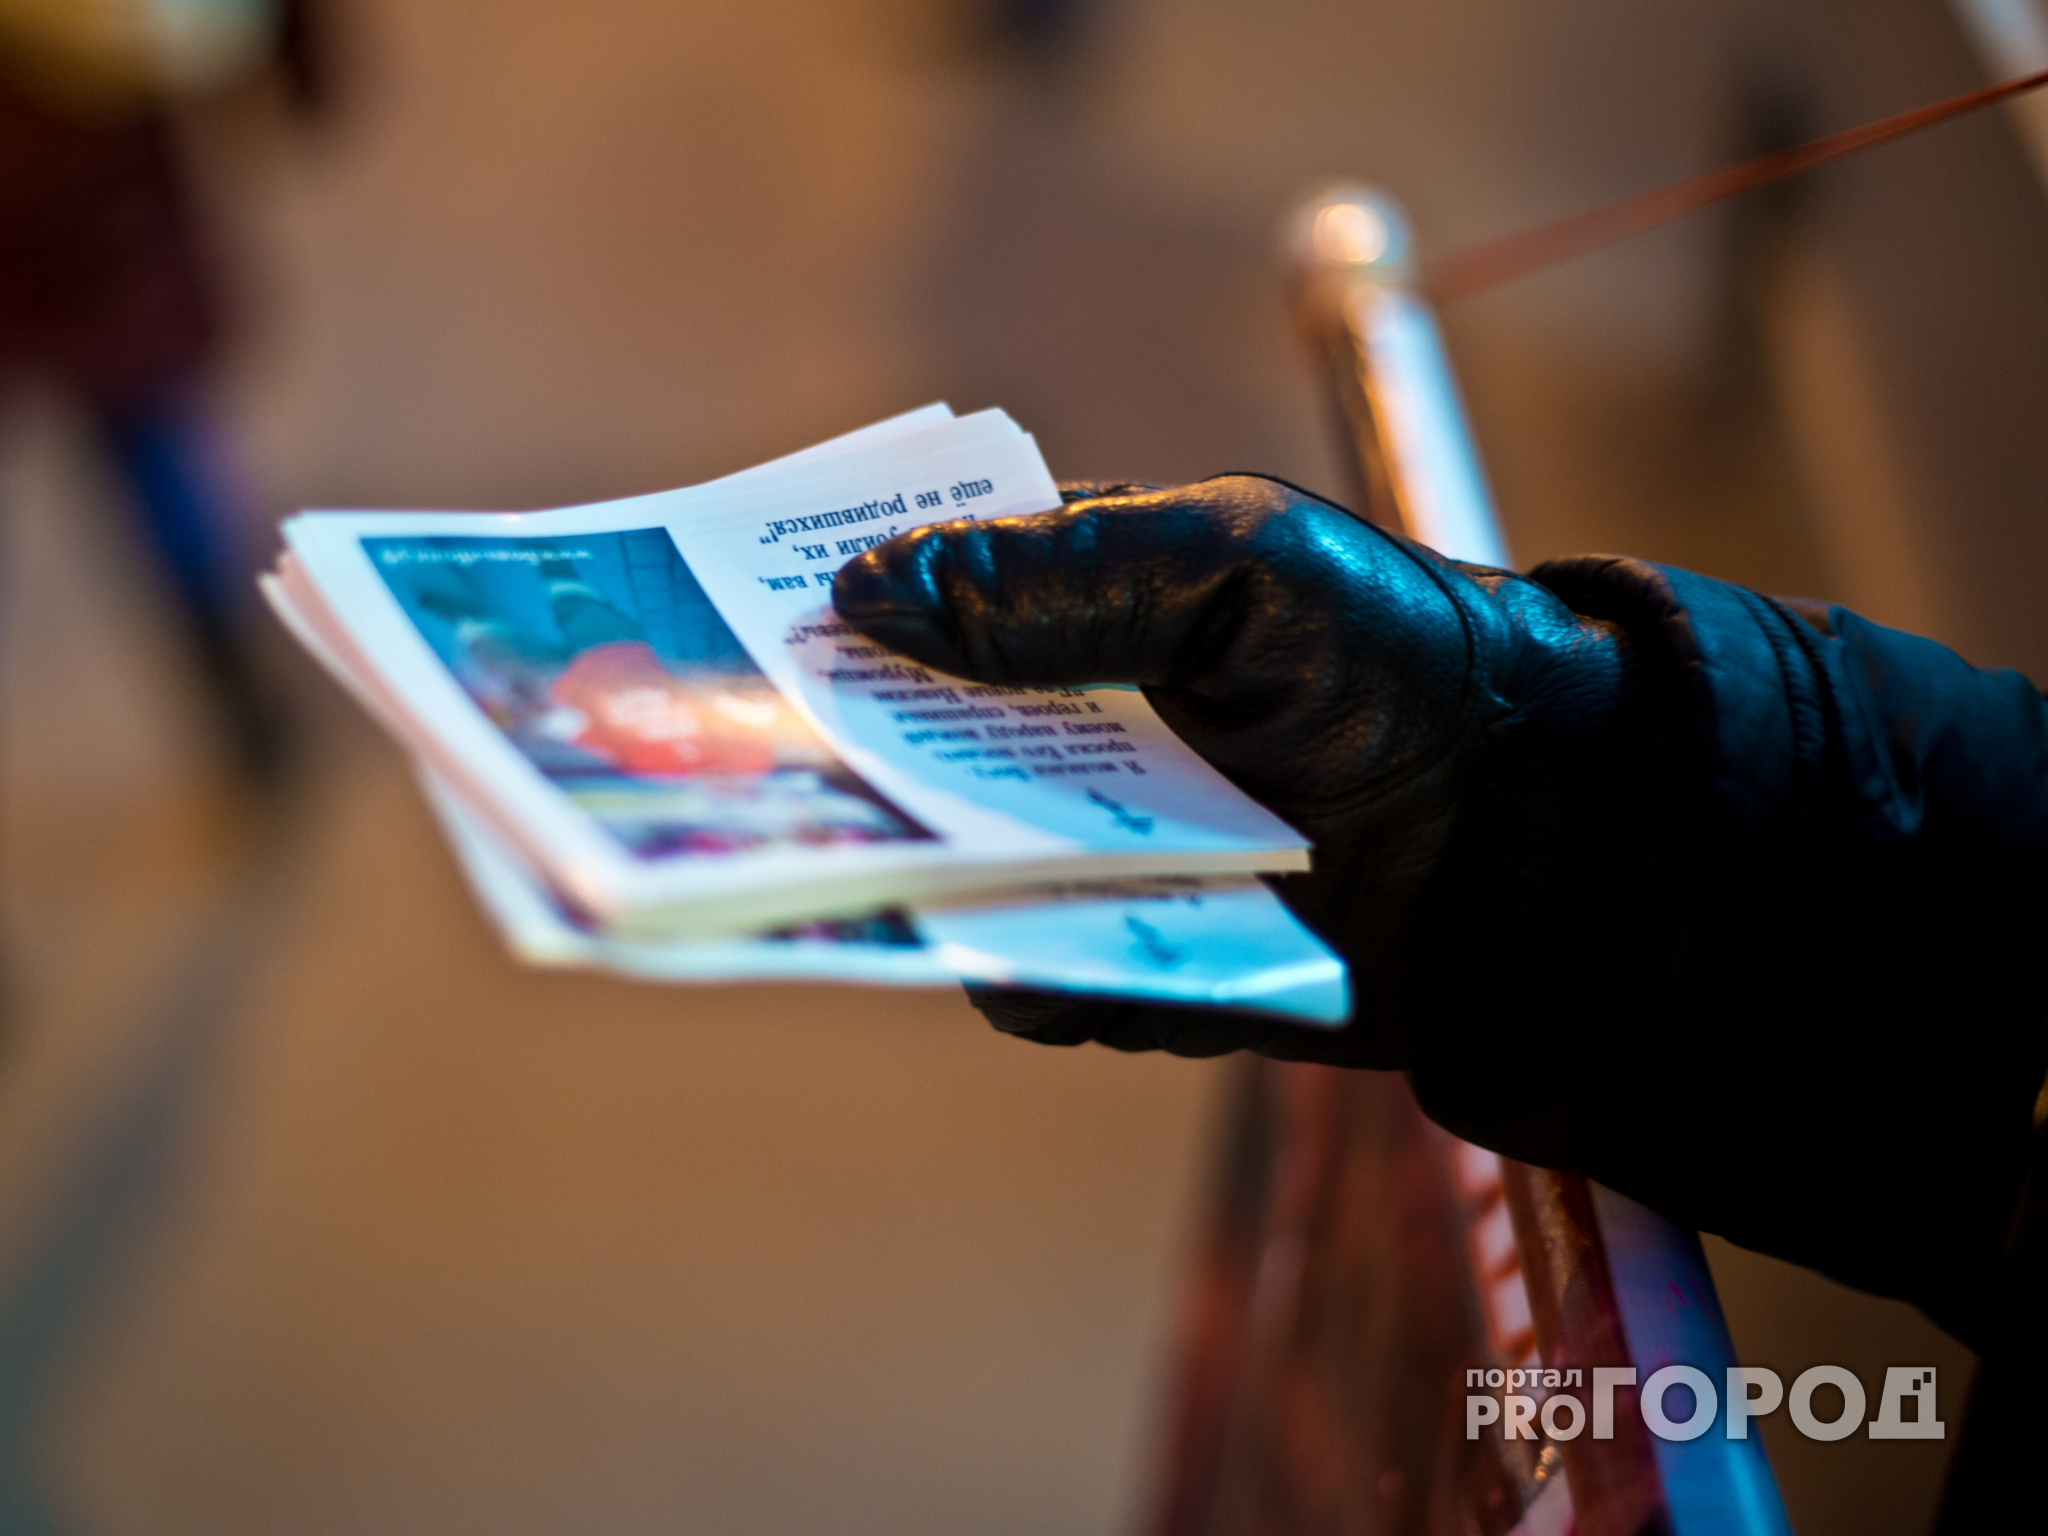 В Чебоксарах раздавали листовки, призывающие к межнациональной розни